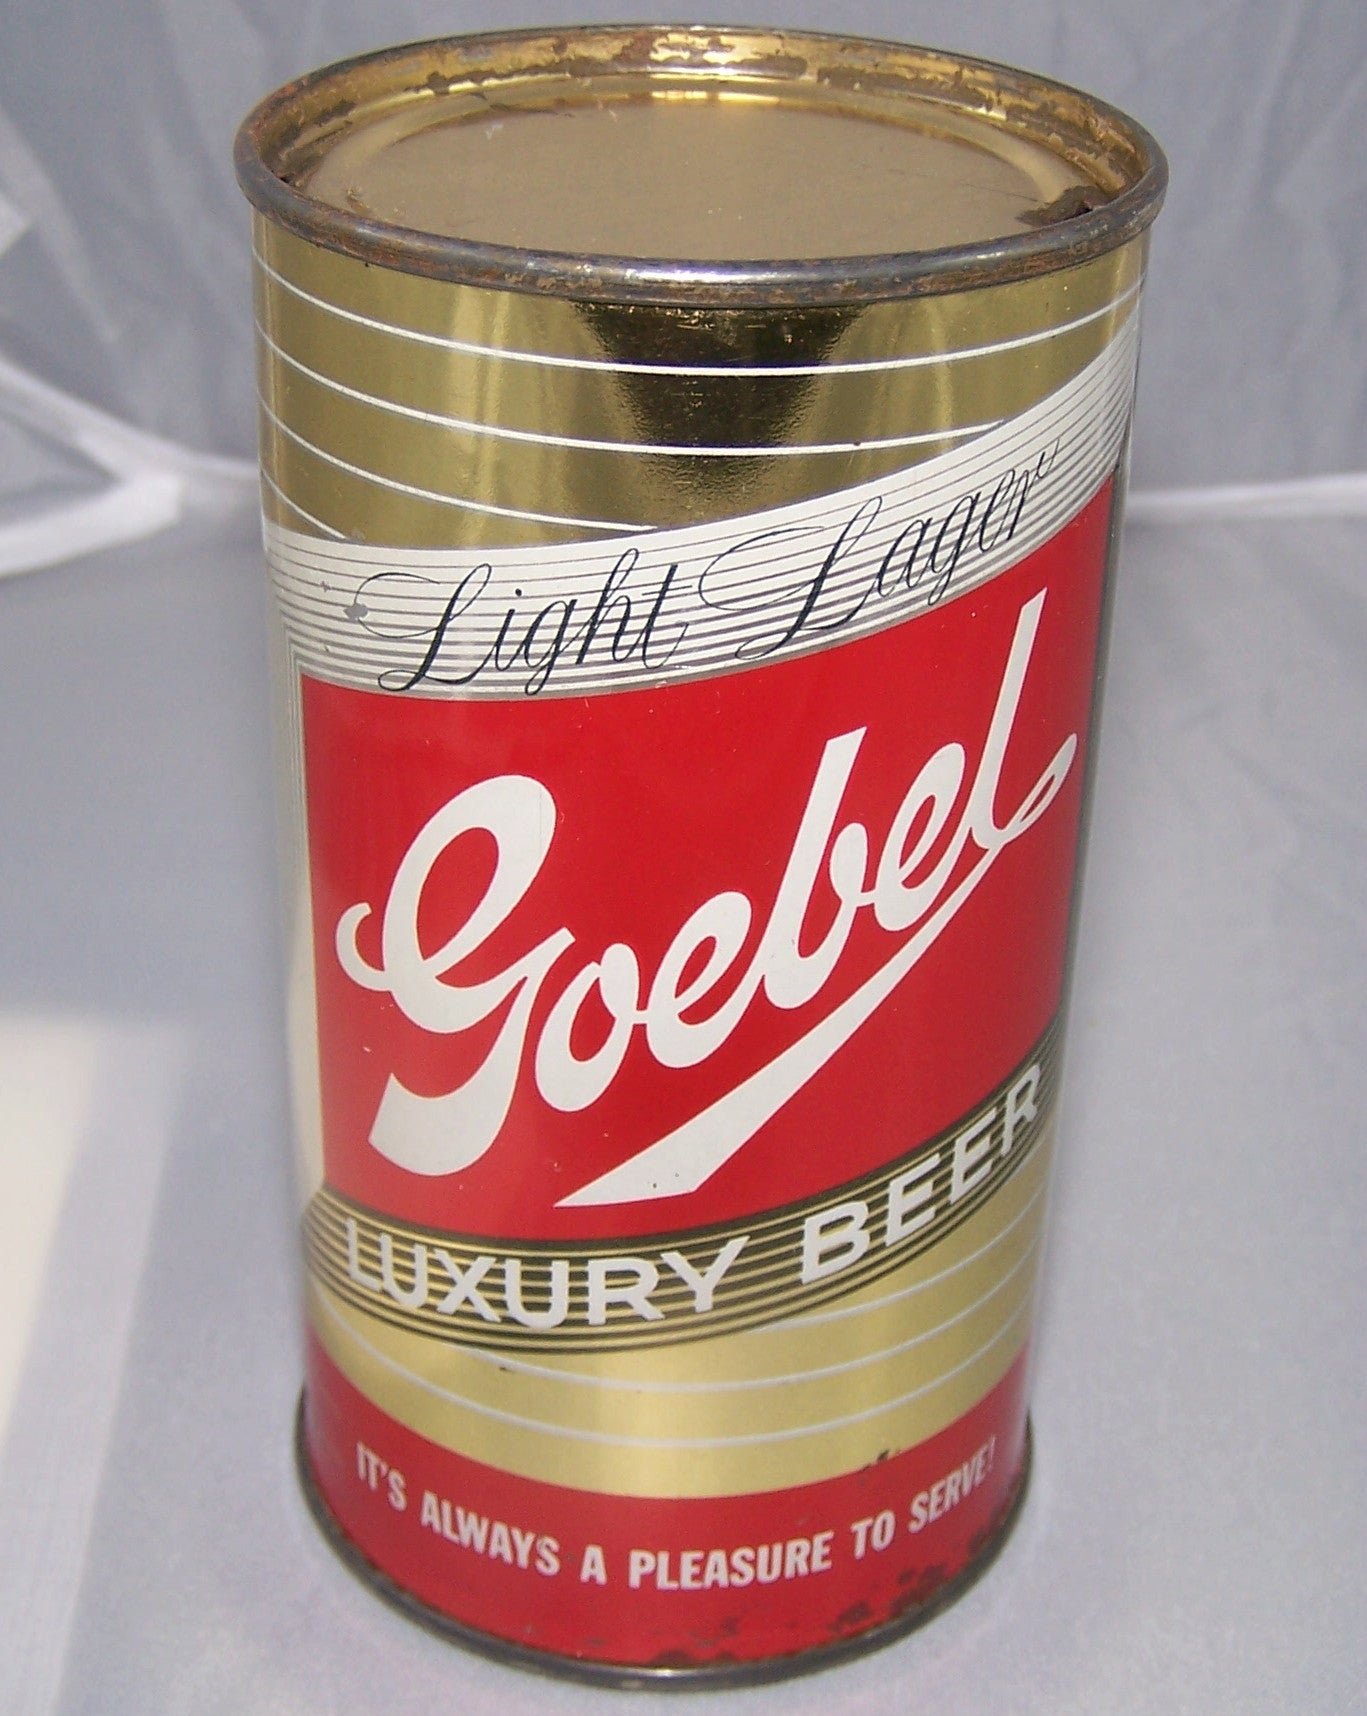 Goebel Luxury Beer, Oakland, USBC 70-26, Grade 1 to 1/1+ Sold 2/7/15